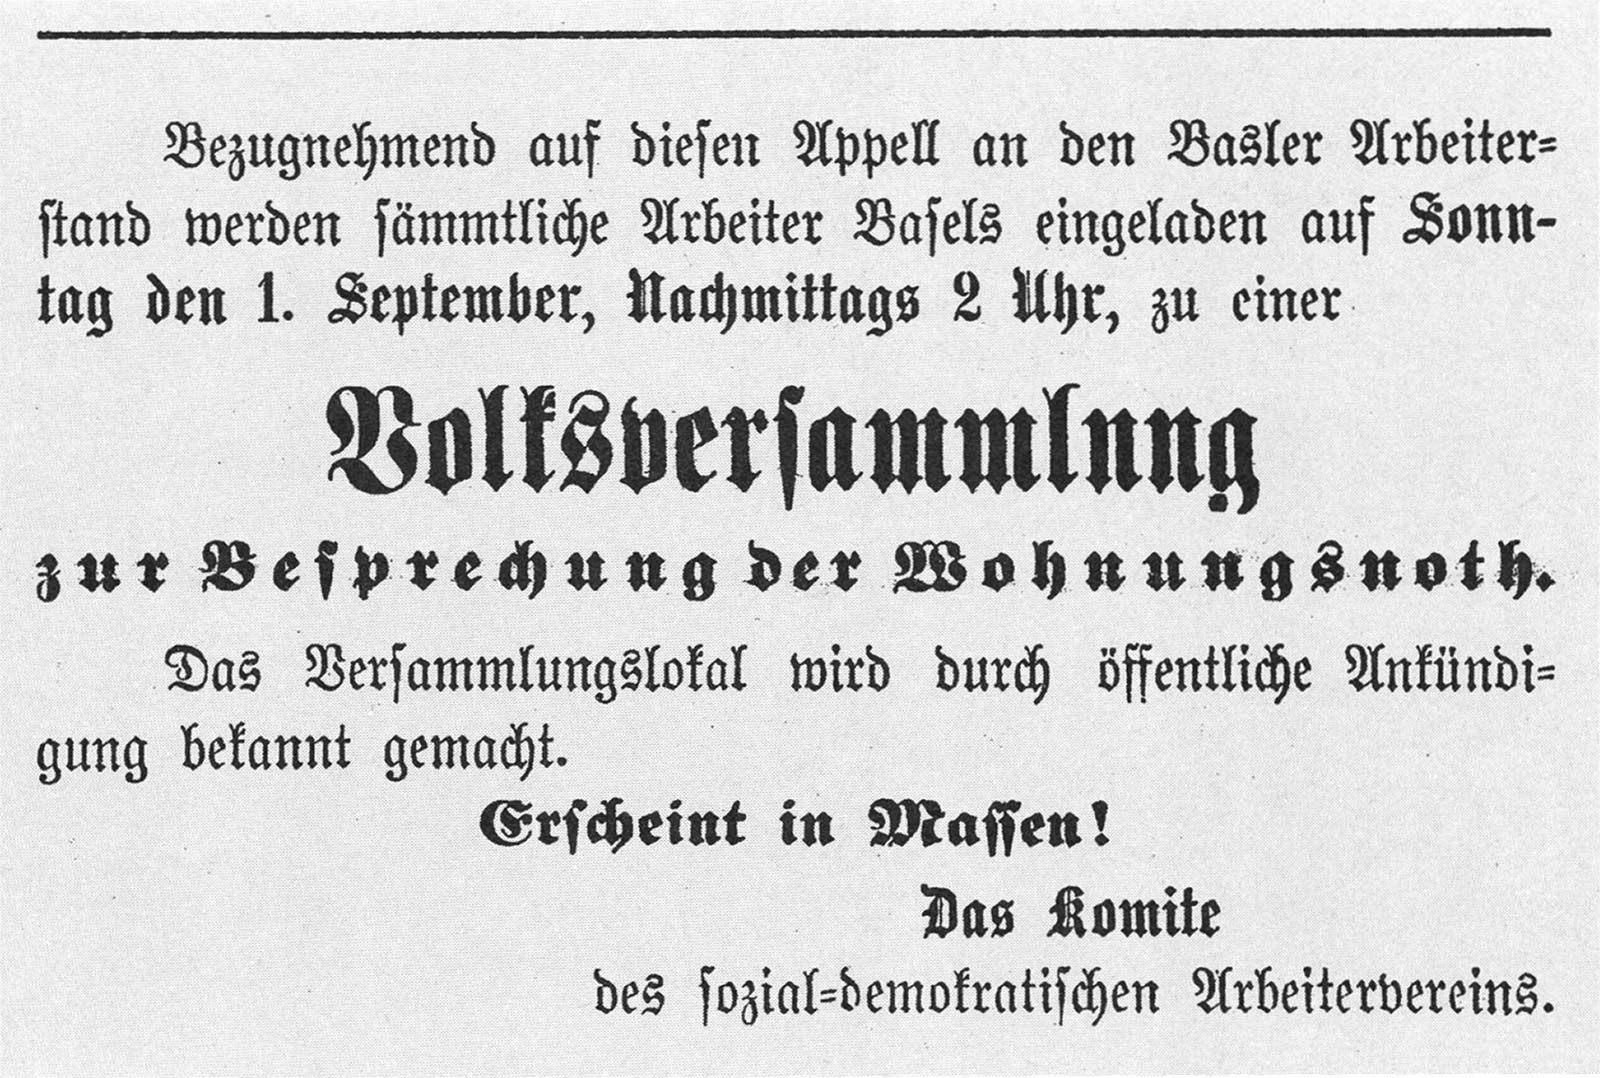 newspaper flyer written in gothic german